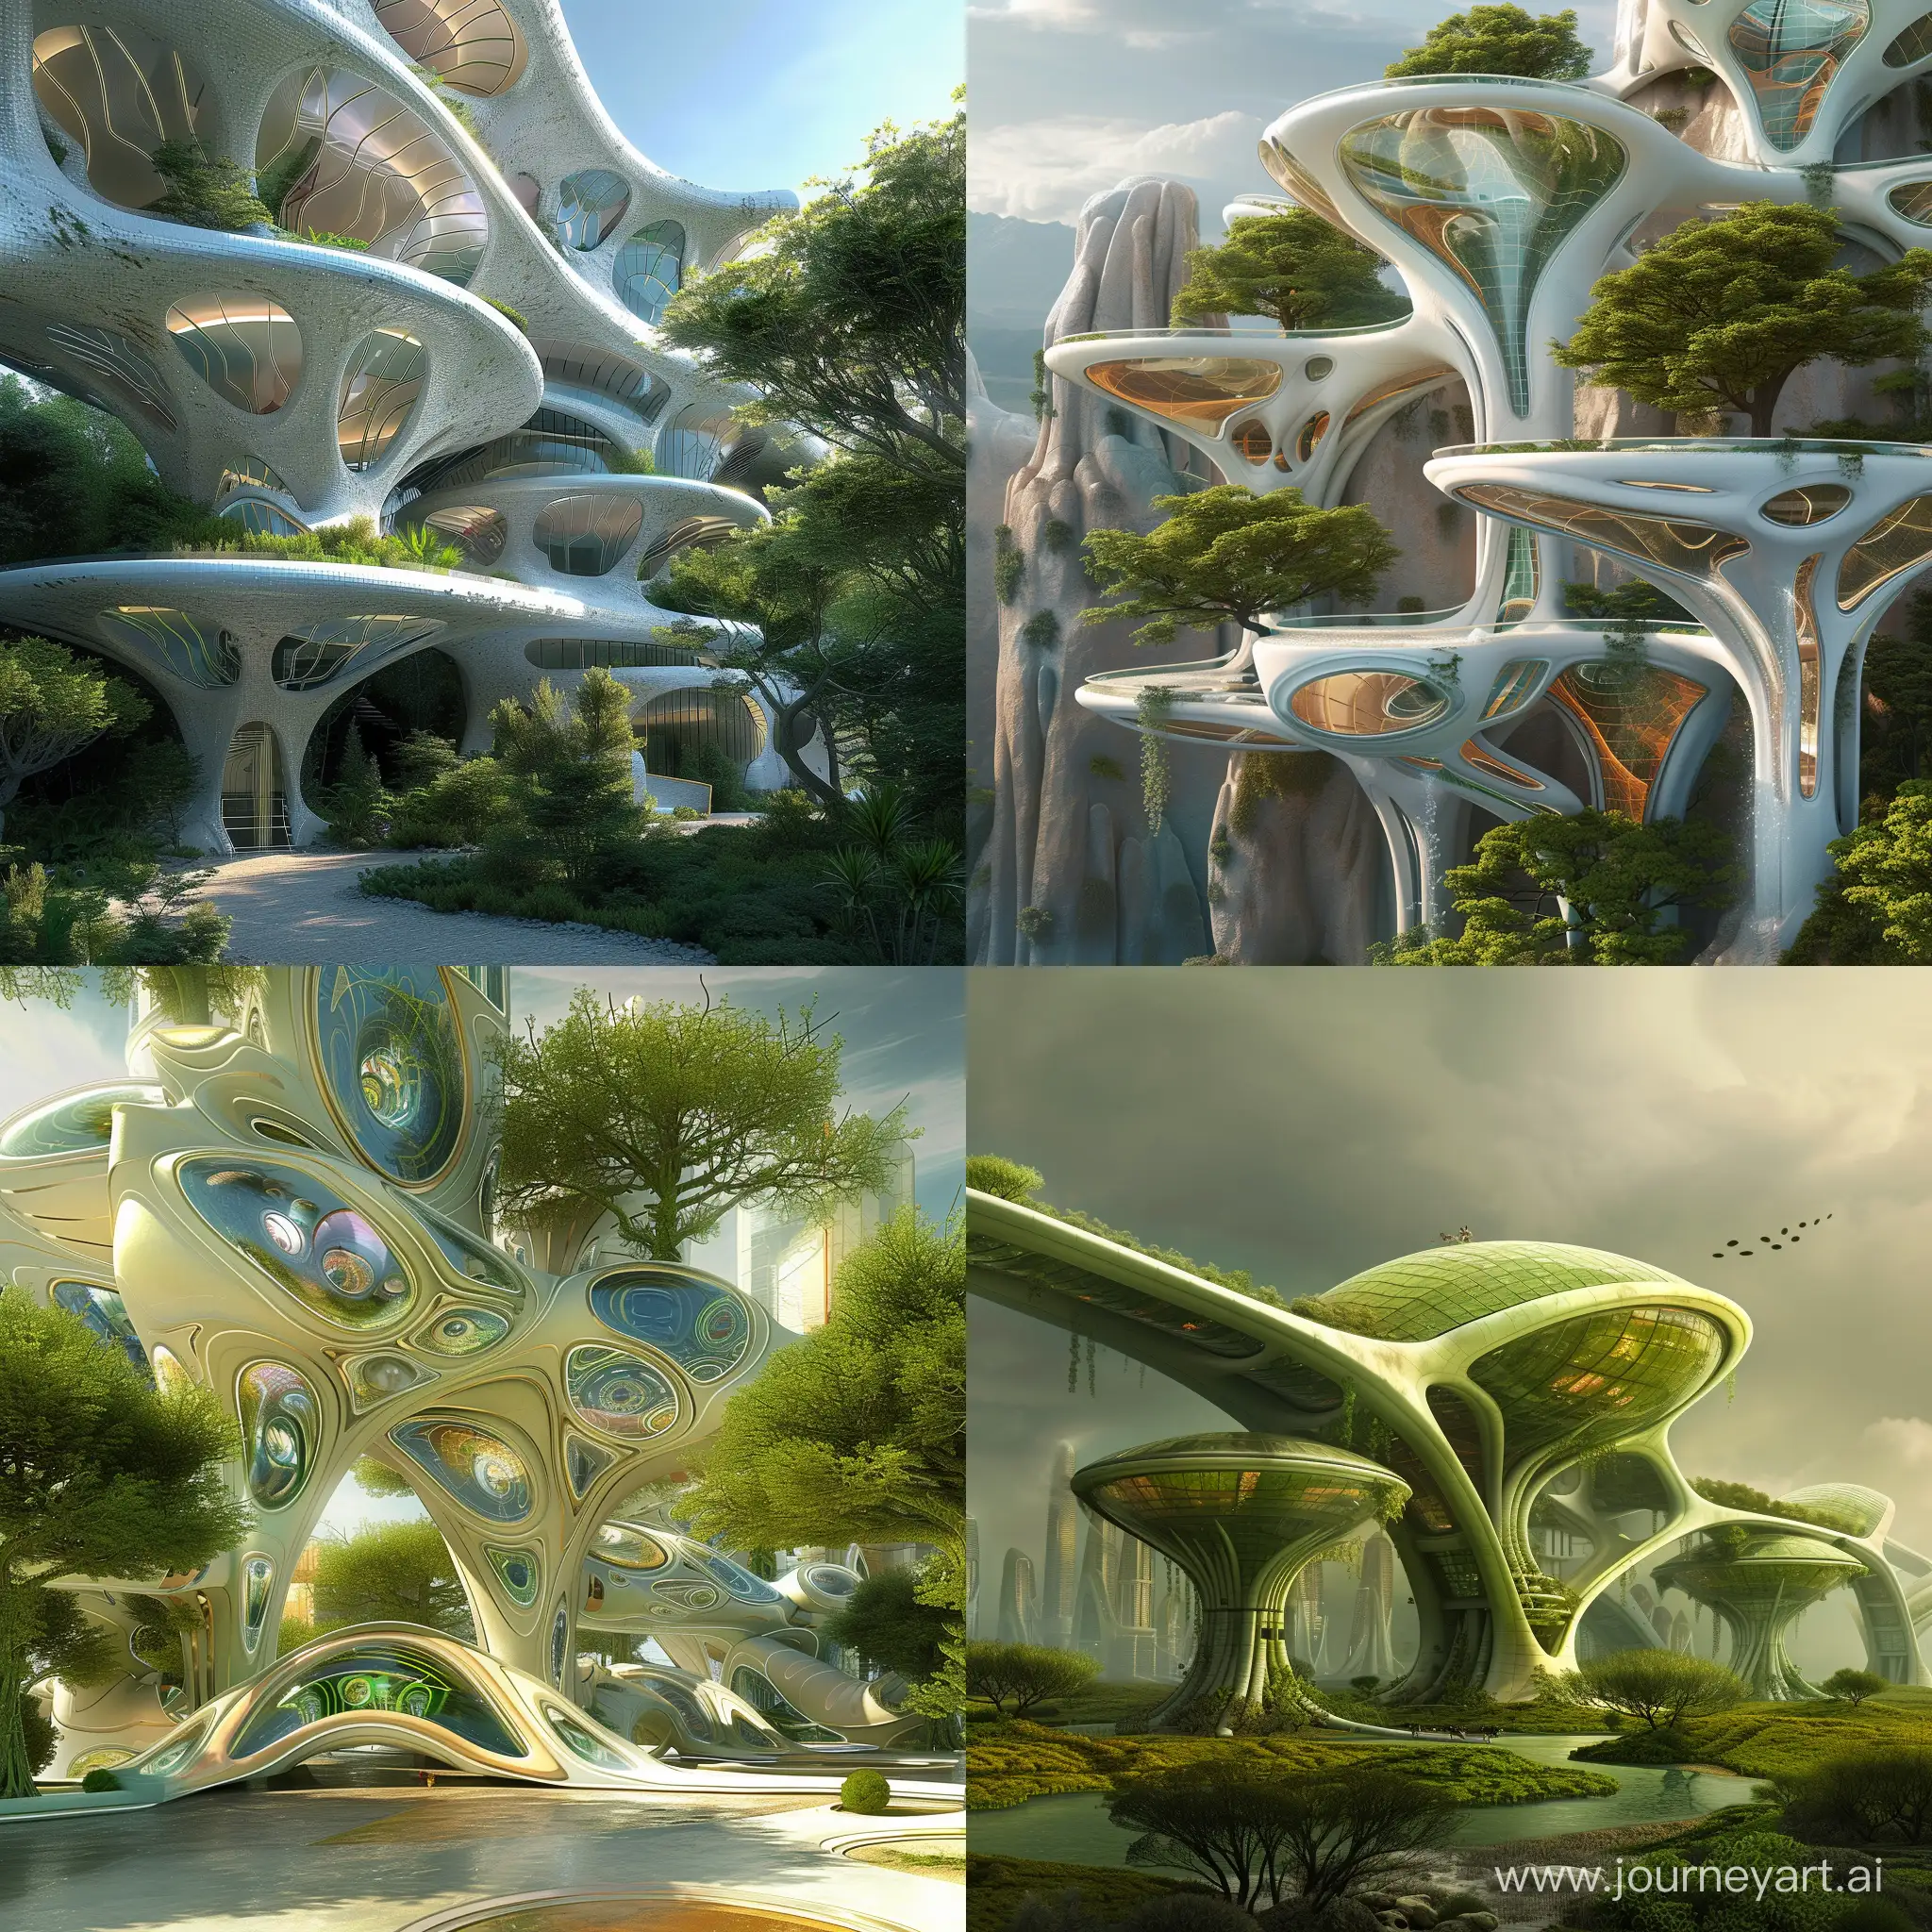 bioarchitecture, the future , fantasy design by Bob Mackie
